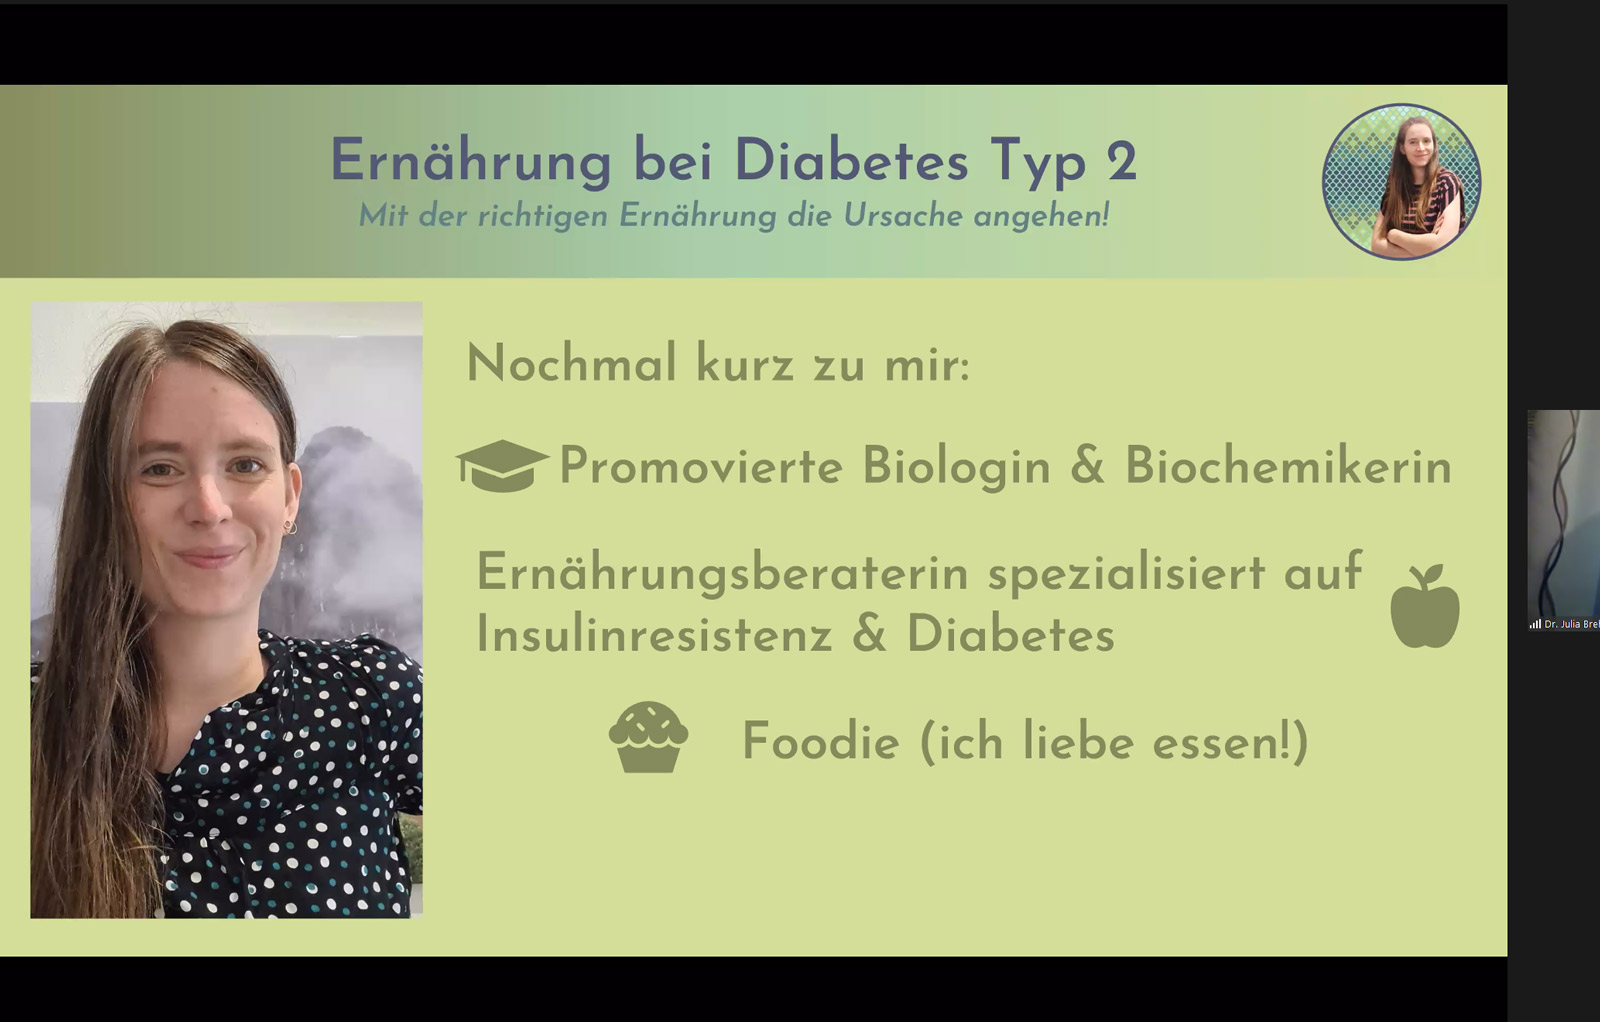 Ein paar persönliche Infos zu Julia Brehm auf einer Folie: Julia Brehm ist promovierte Biologin & Biochemikern, Ernährungsberaterin und liebt Essen 